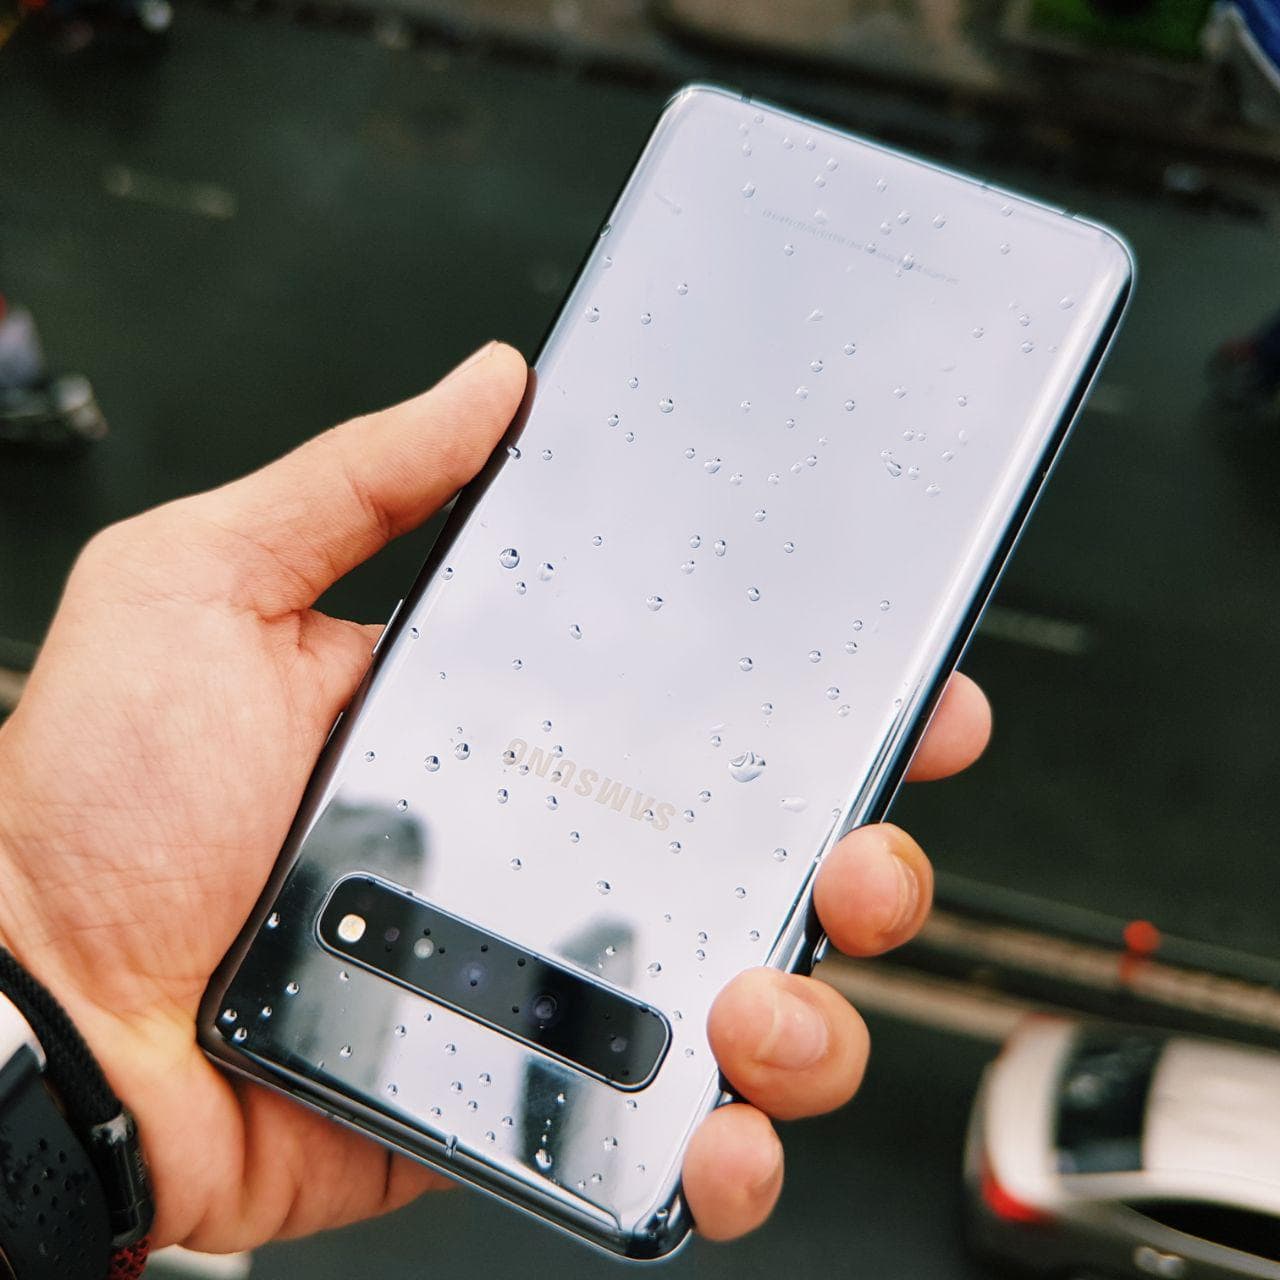 TOP smartphone chụp ảnh đẹp cho s10 5G: Không chỉ là một chiếc điện thoại thông thường, Samsung Galaxy S10 5G được đánh giá là TOP smartphone chụp ảnh đẹp hiện tại. Với ba cảm biến camera sau, camera selfie chất lượng cao và nhiều tính năng hấp dẫn, bạn sẽ không thể tin vào những bức ảnh đẹp mà chiếc điện thoại này mang đến.